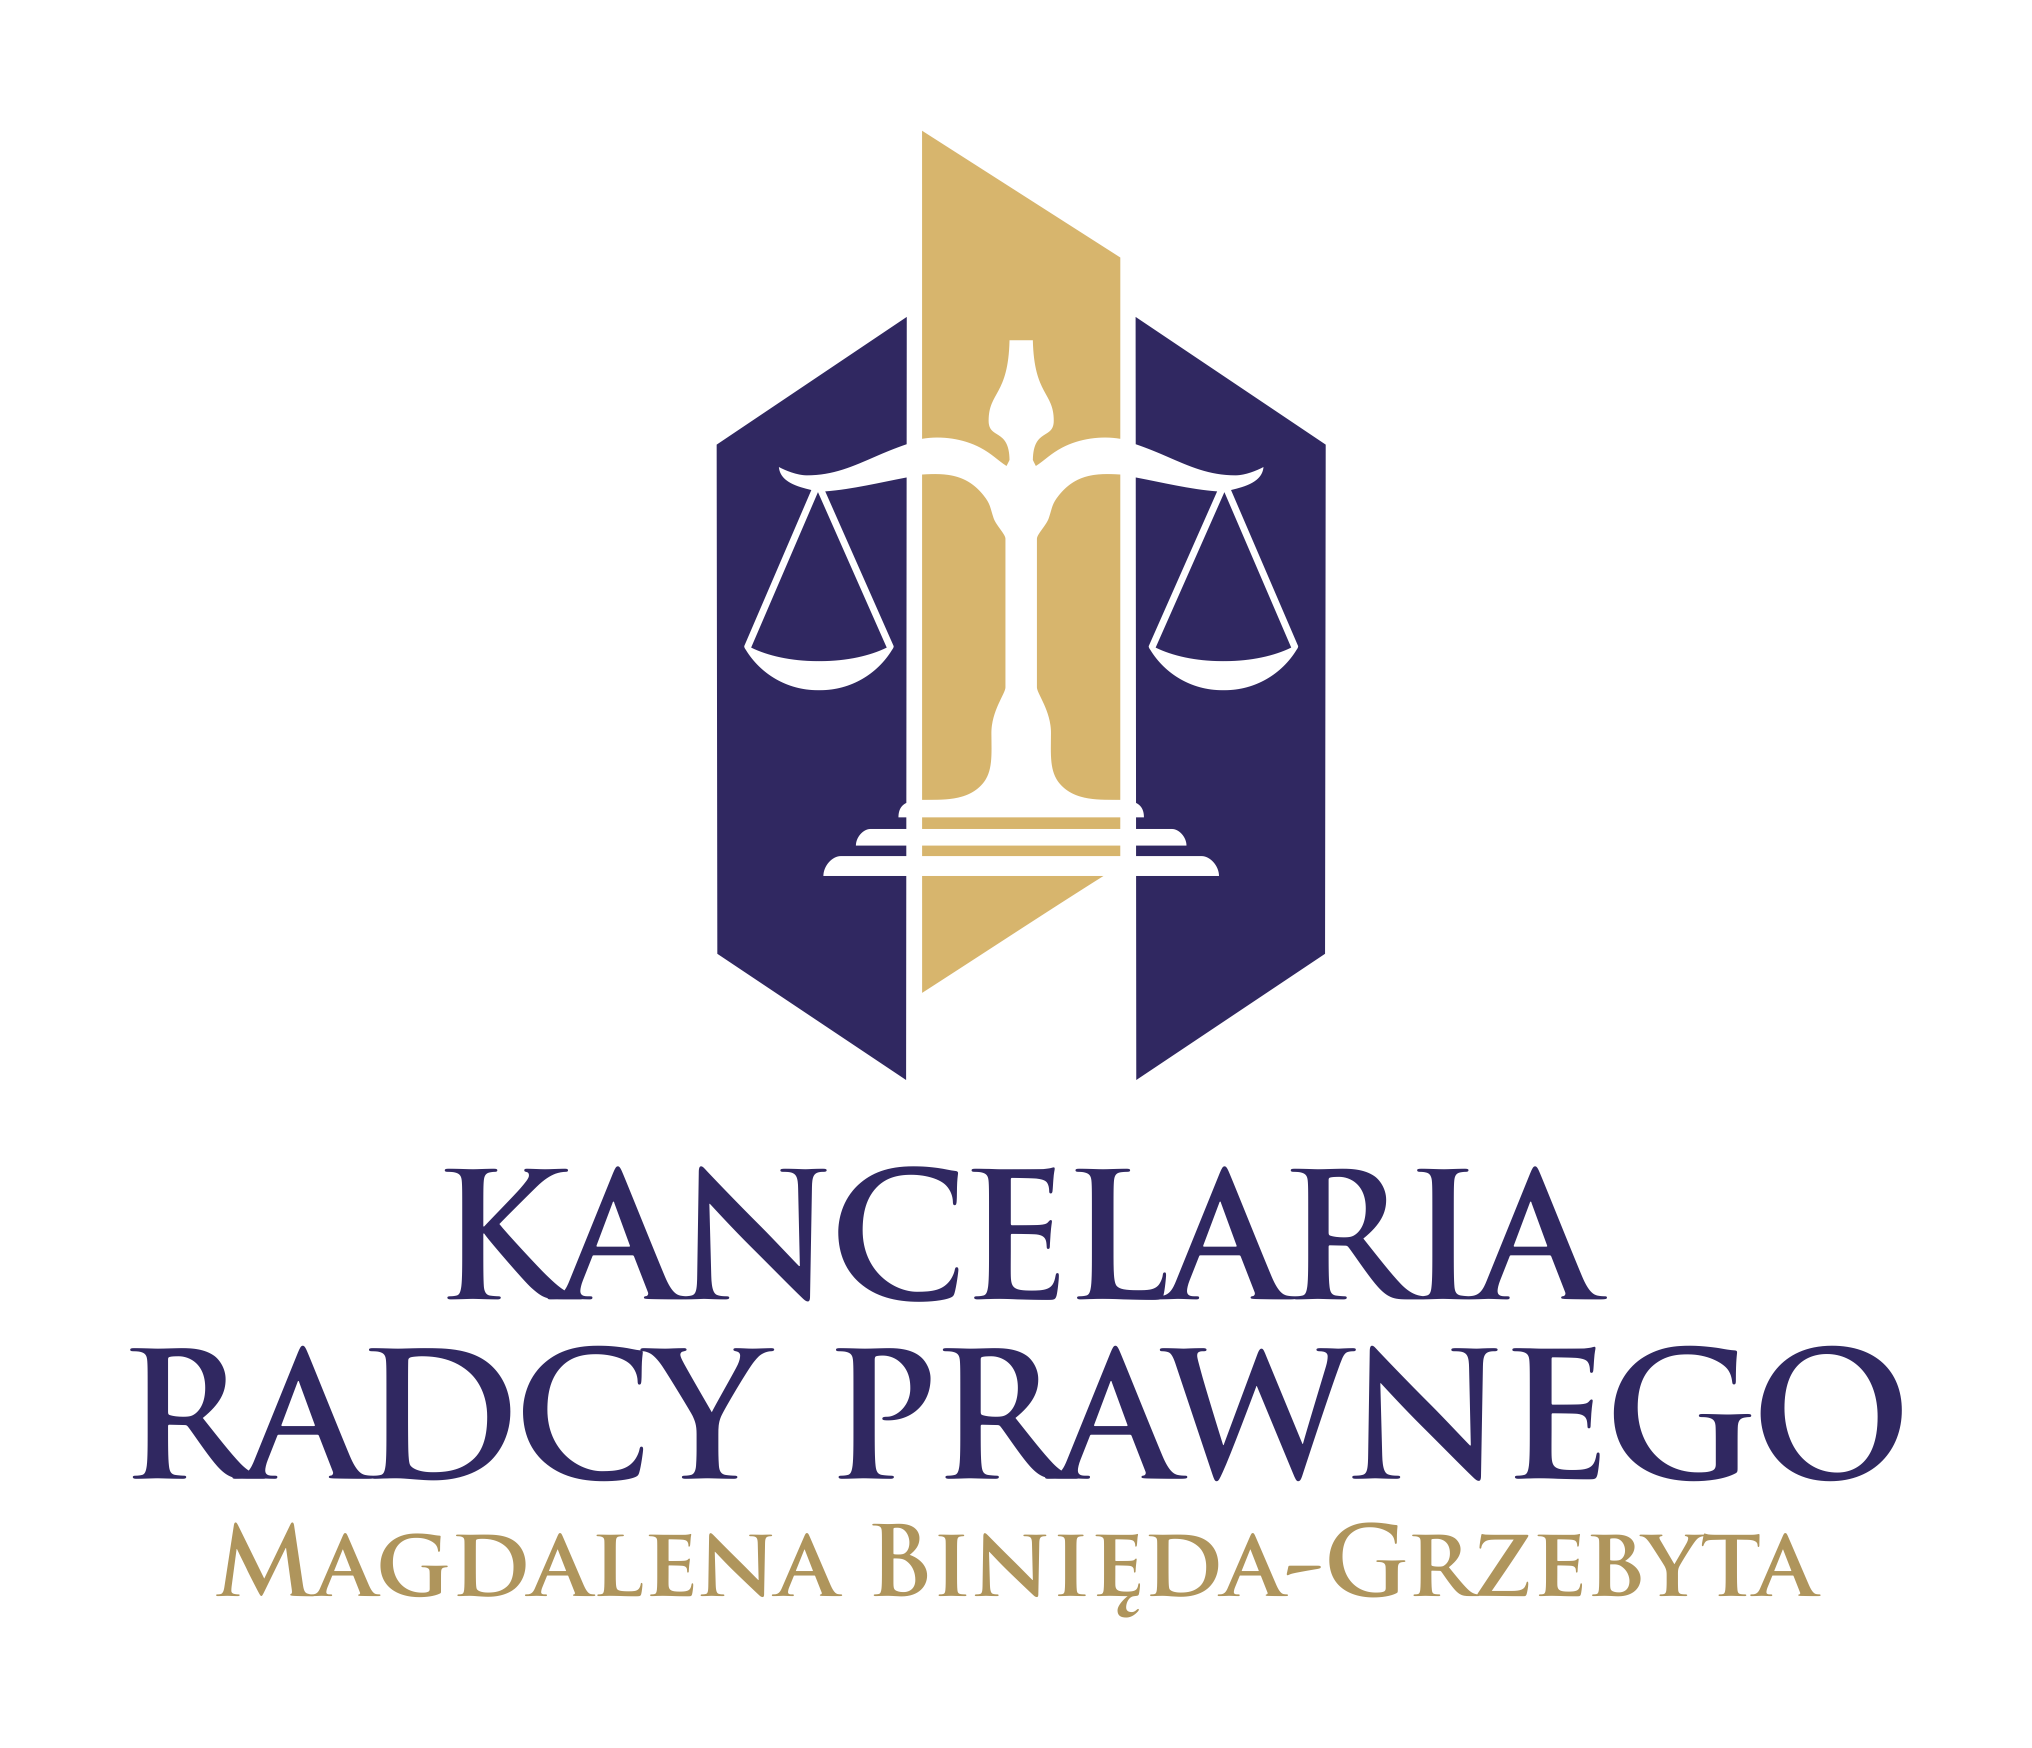 Kancelaria Radcy Prawnego Magdalena Binięda-Grzebyta